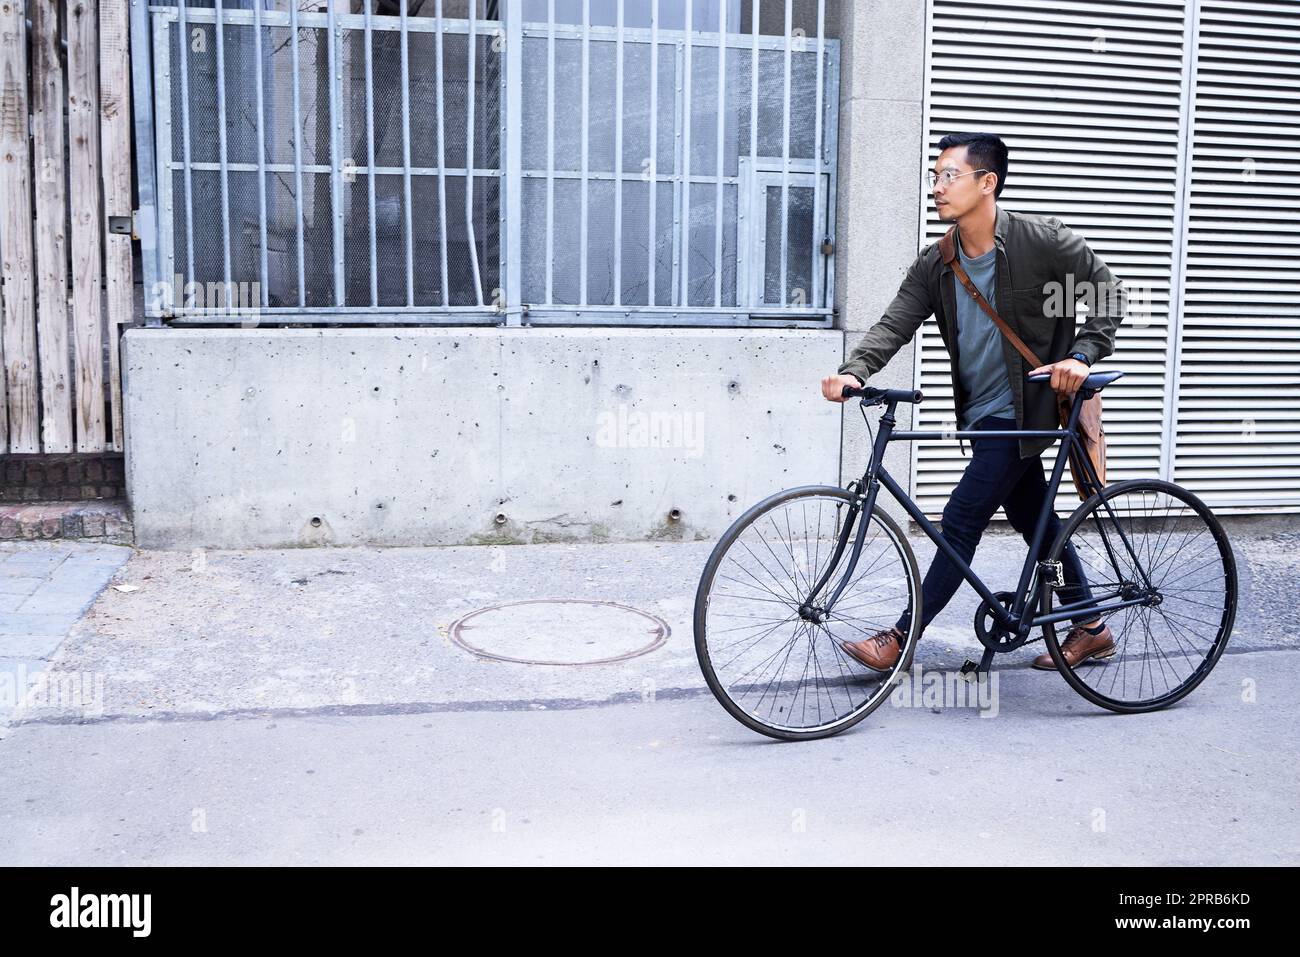 Je garde mes trajets en ville respectueux de l'environnement. Un jeune homme utilisant un vélo dans la ville. Banque D'Images